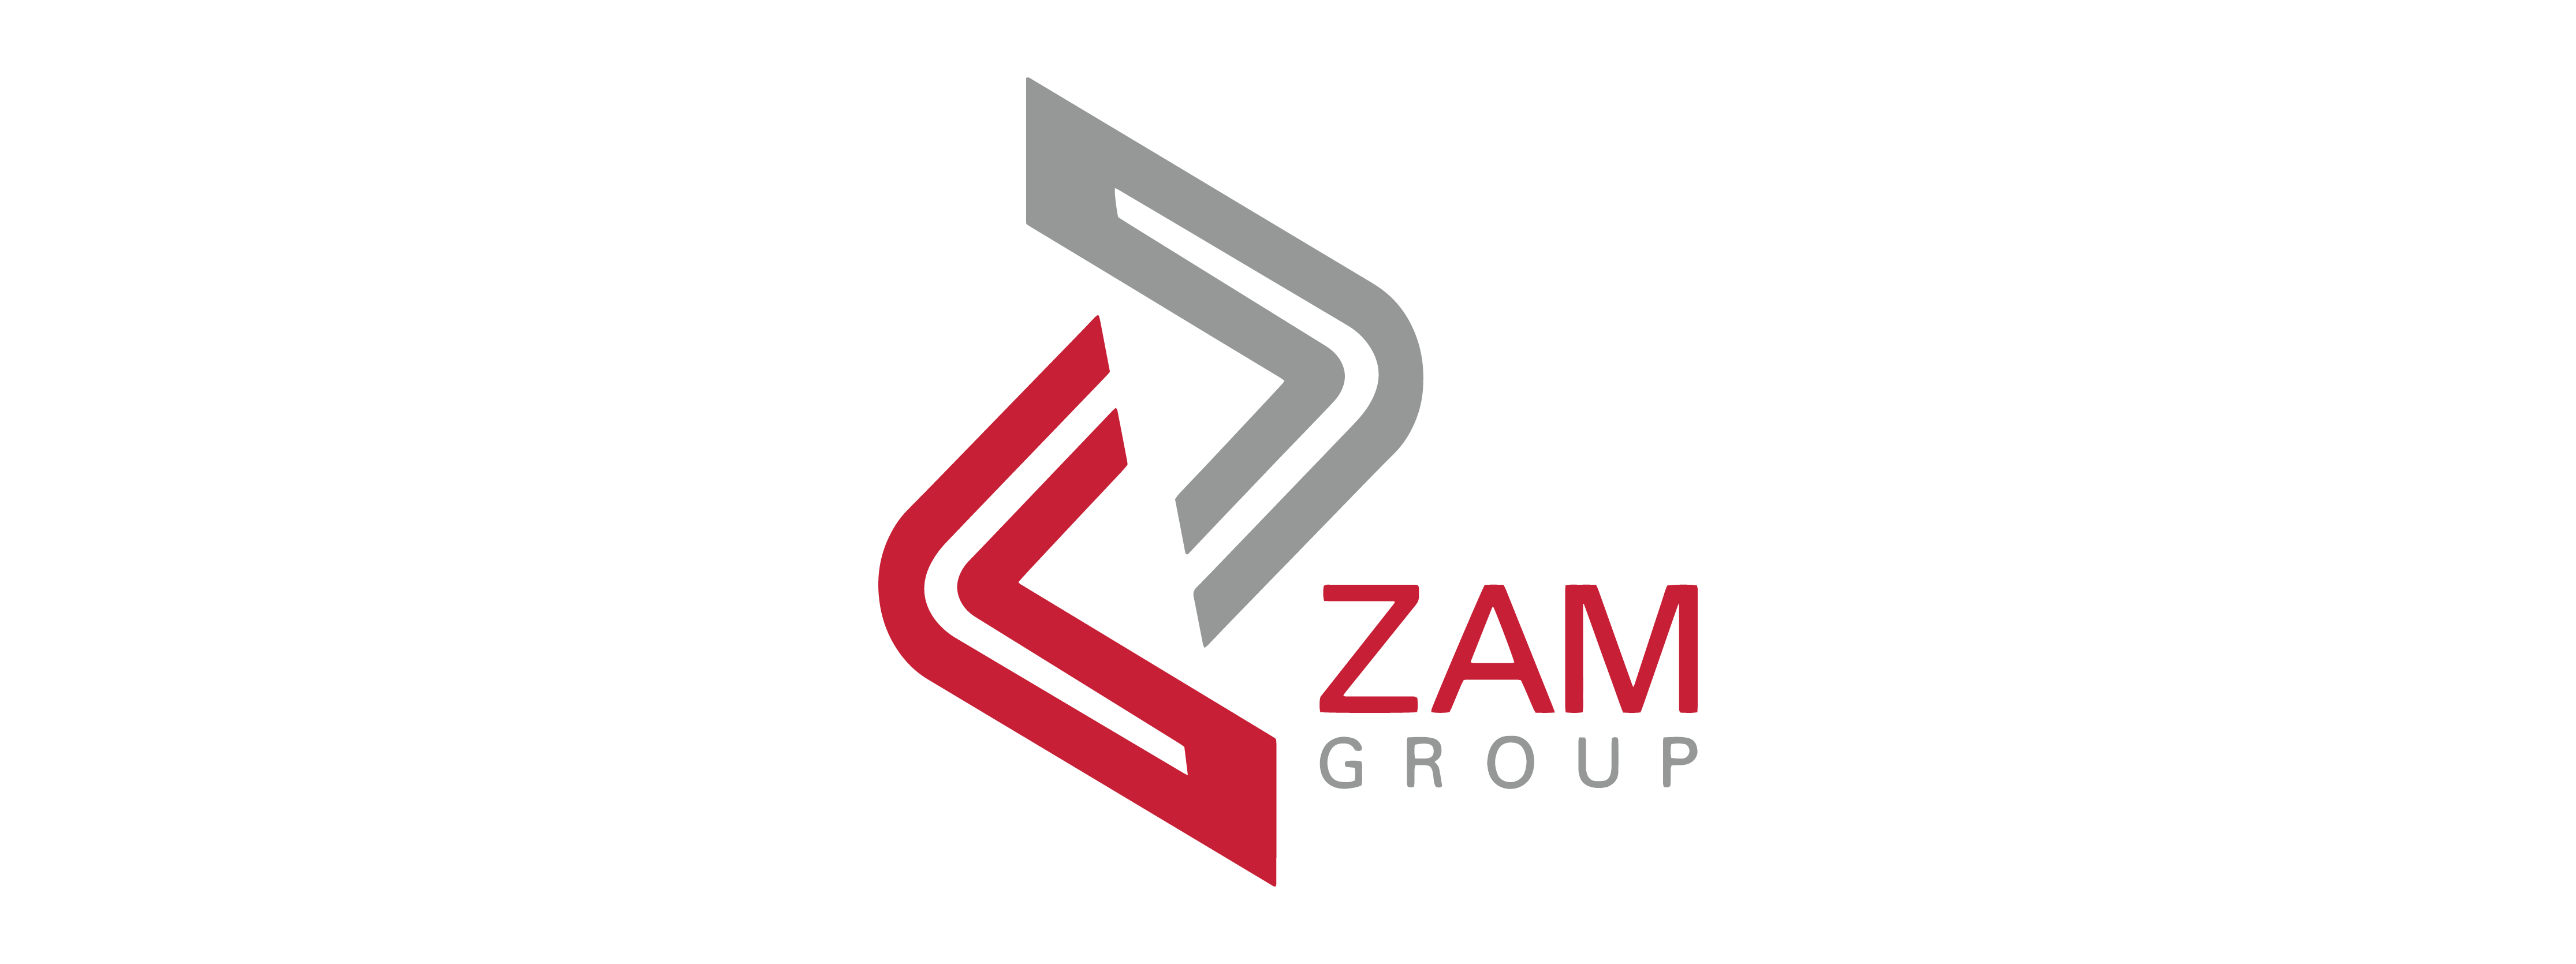 ZAM Group